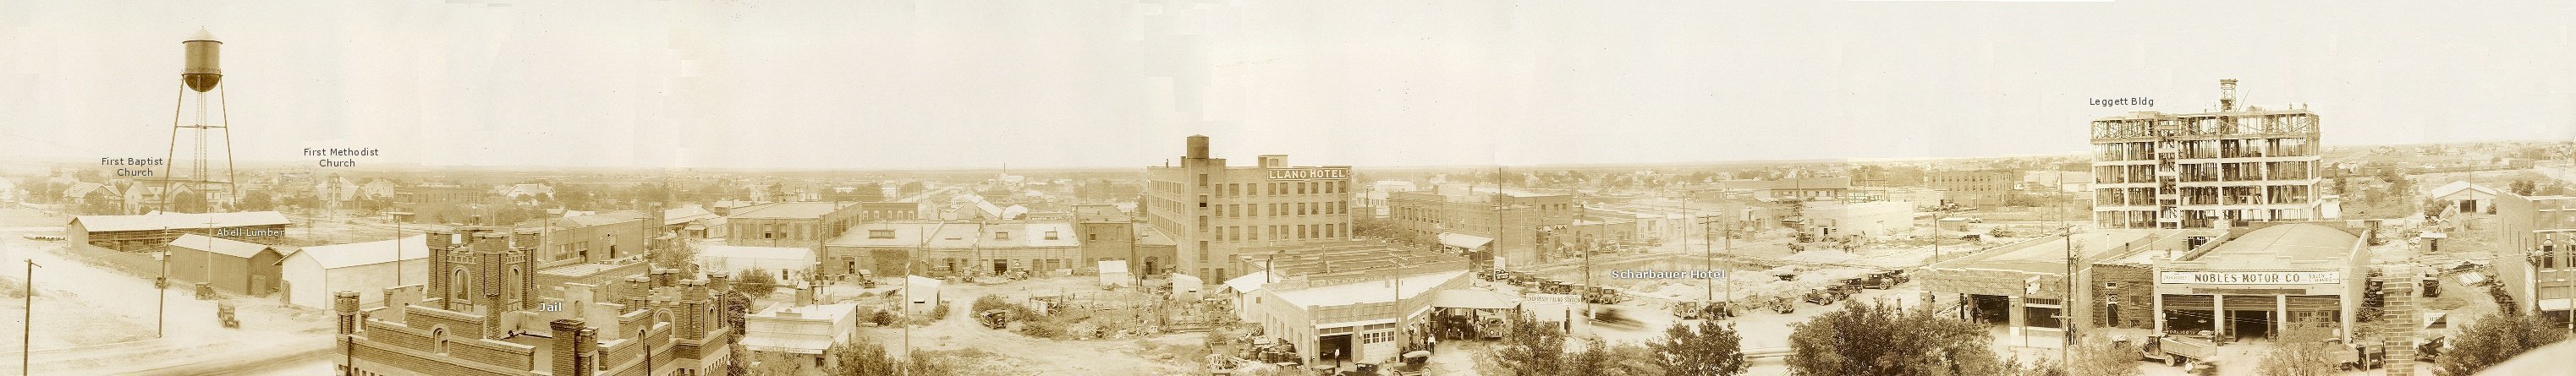 Midland, Texas, 1926